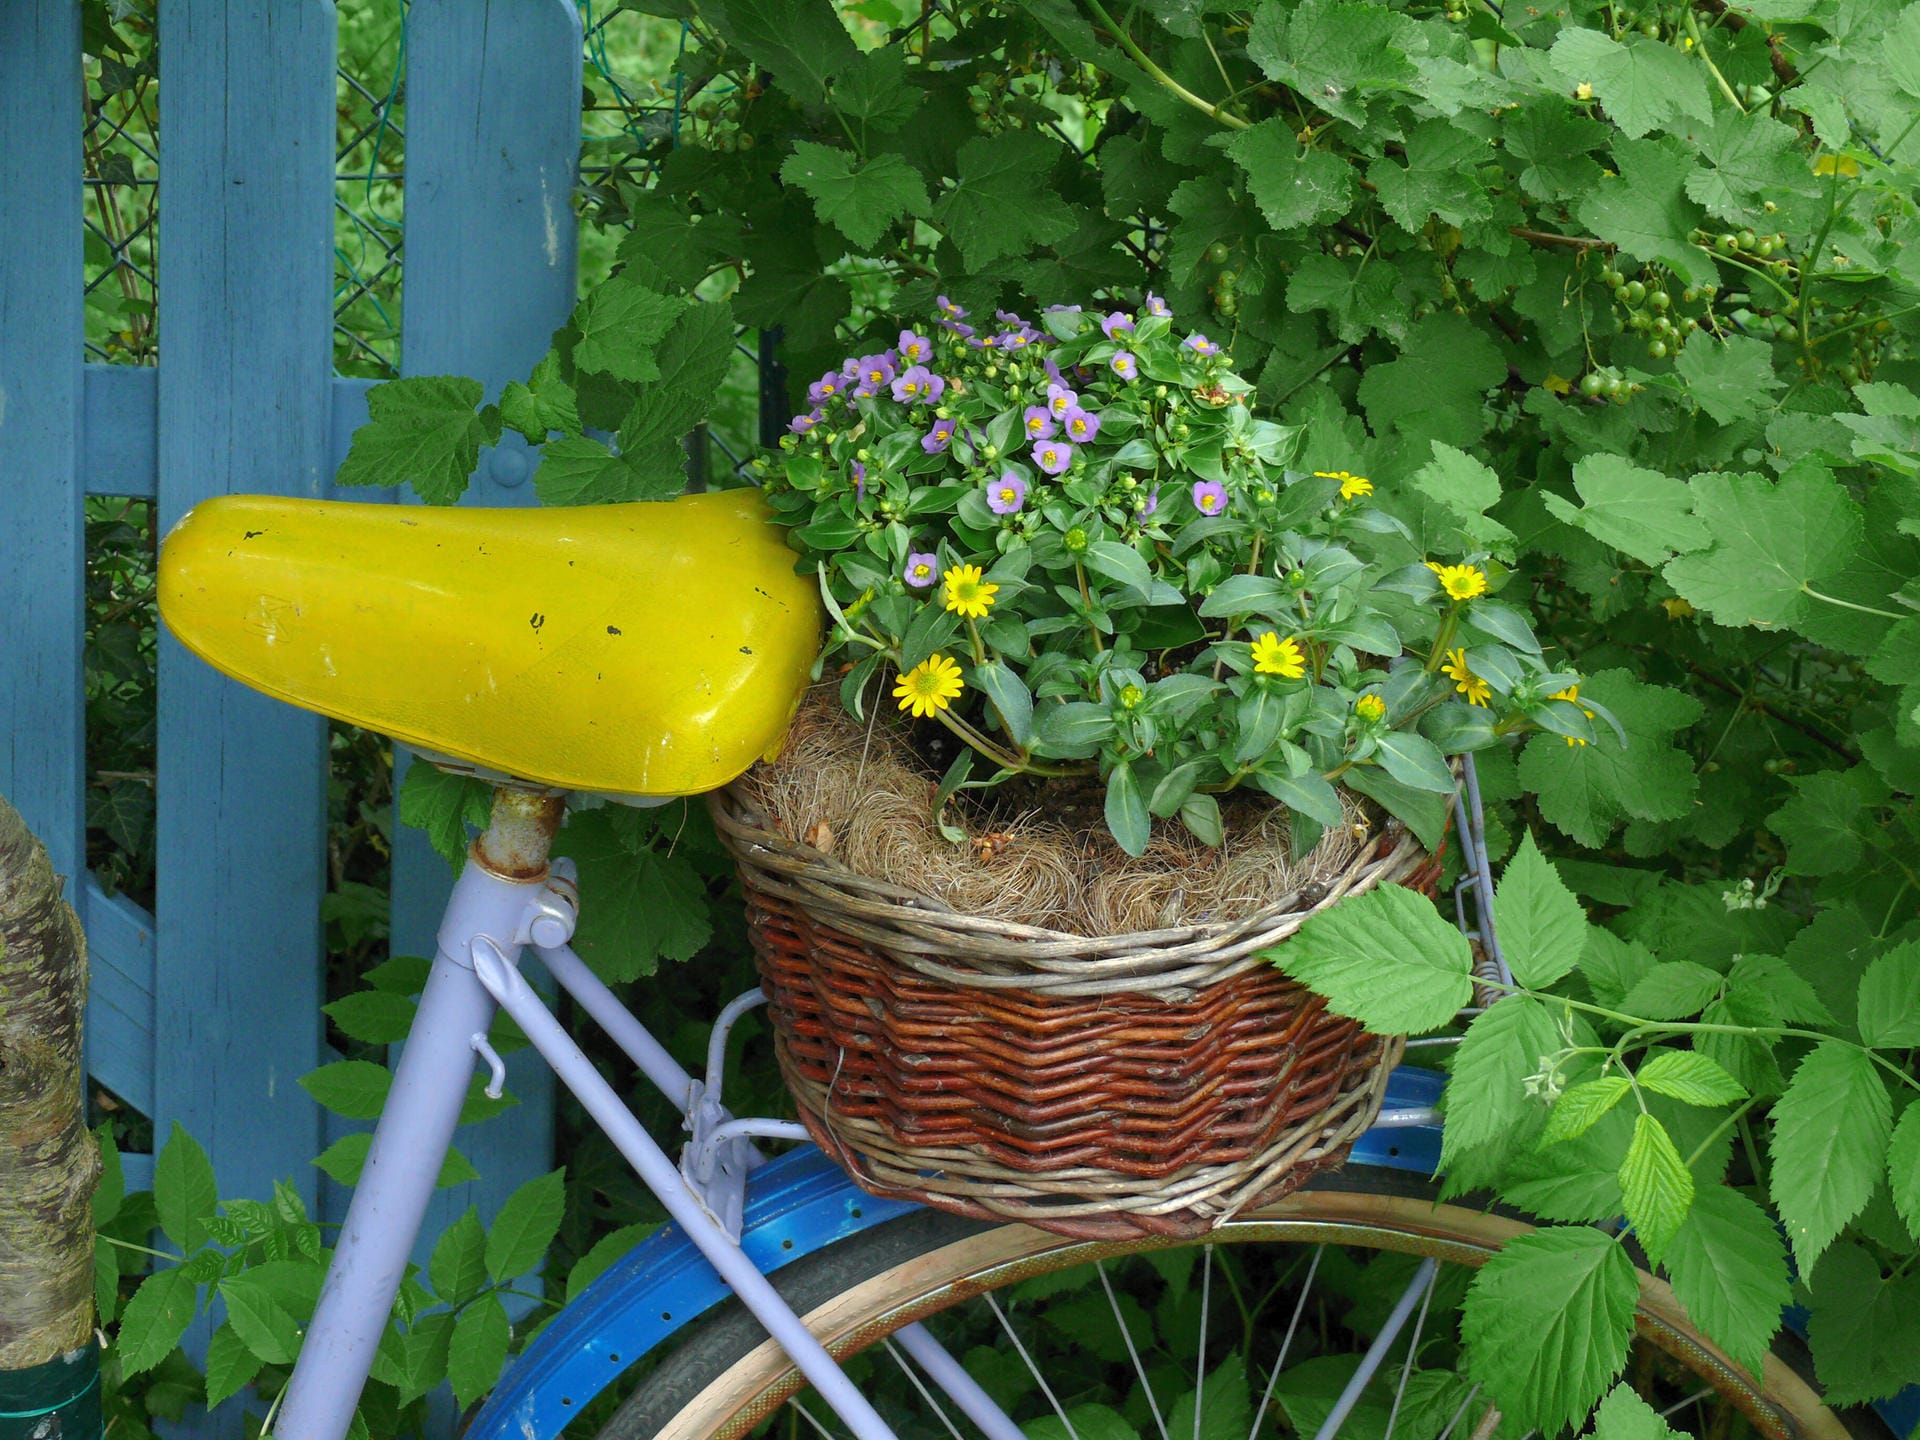 Blumenfahrrad: Dekorieren Sie einen ausgedienten Drahtesel mit einem bepflanzten Weidenkorb auf dem Gepäckträger. Tipp: Wenn Sie möchten, können Sie das Fahrrad vorher noch bunt bemalen – und die Farben der Pflanzen darauf abstimmen.